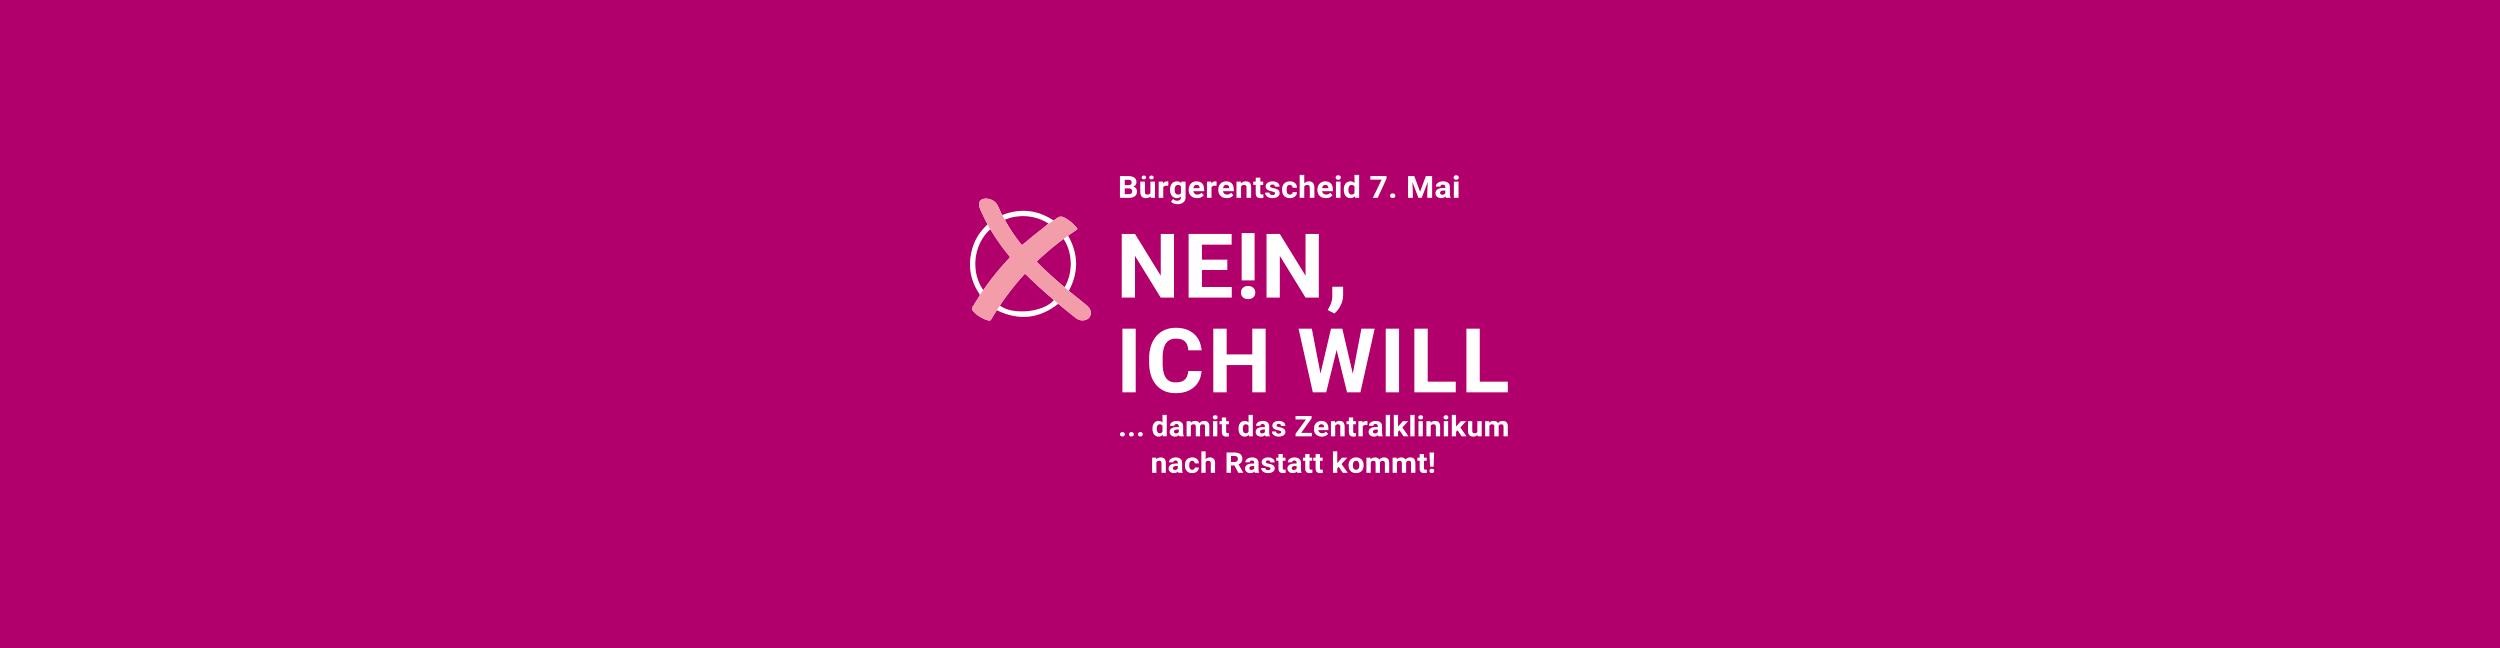 Visualisierung mit Schriftzug "Nein, ich will" zur Kampagne der Stadt Rastatt